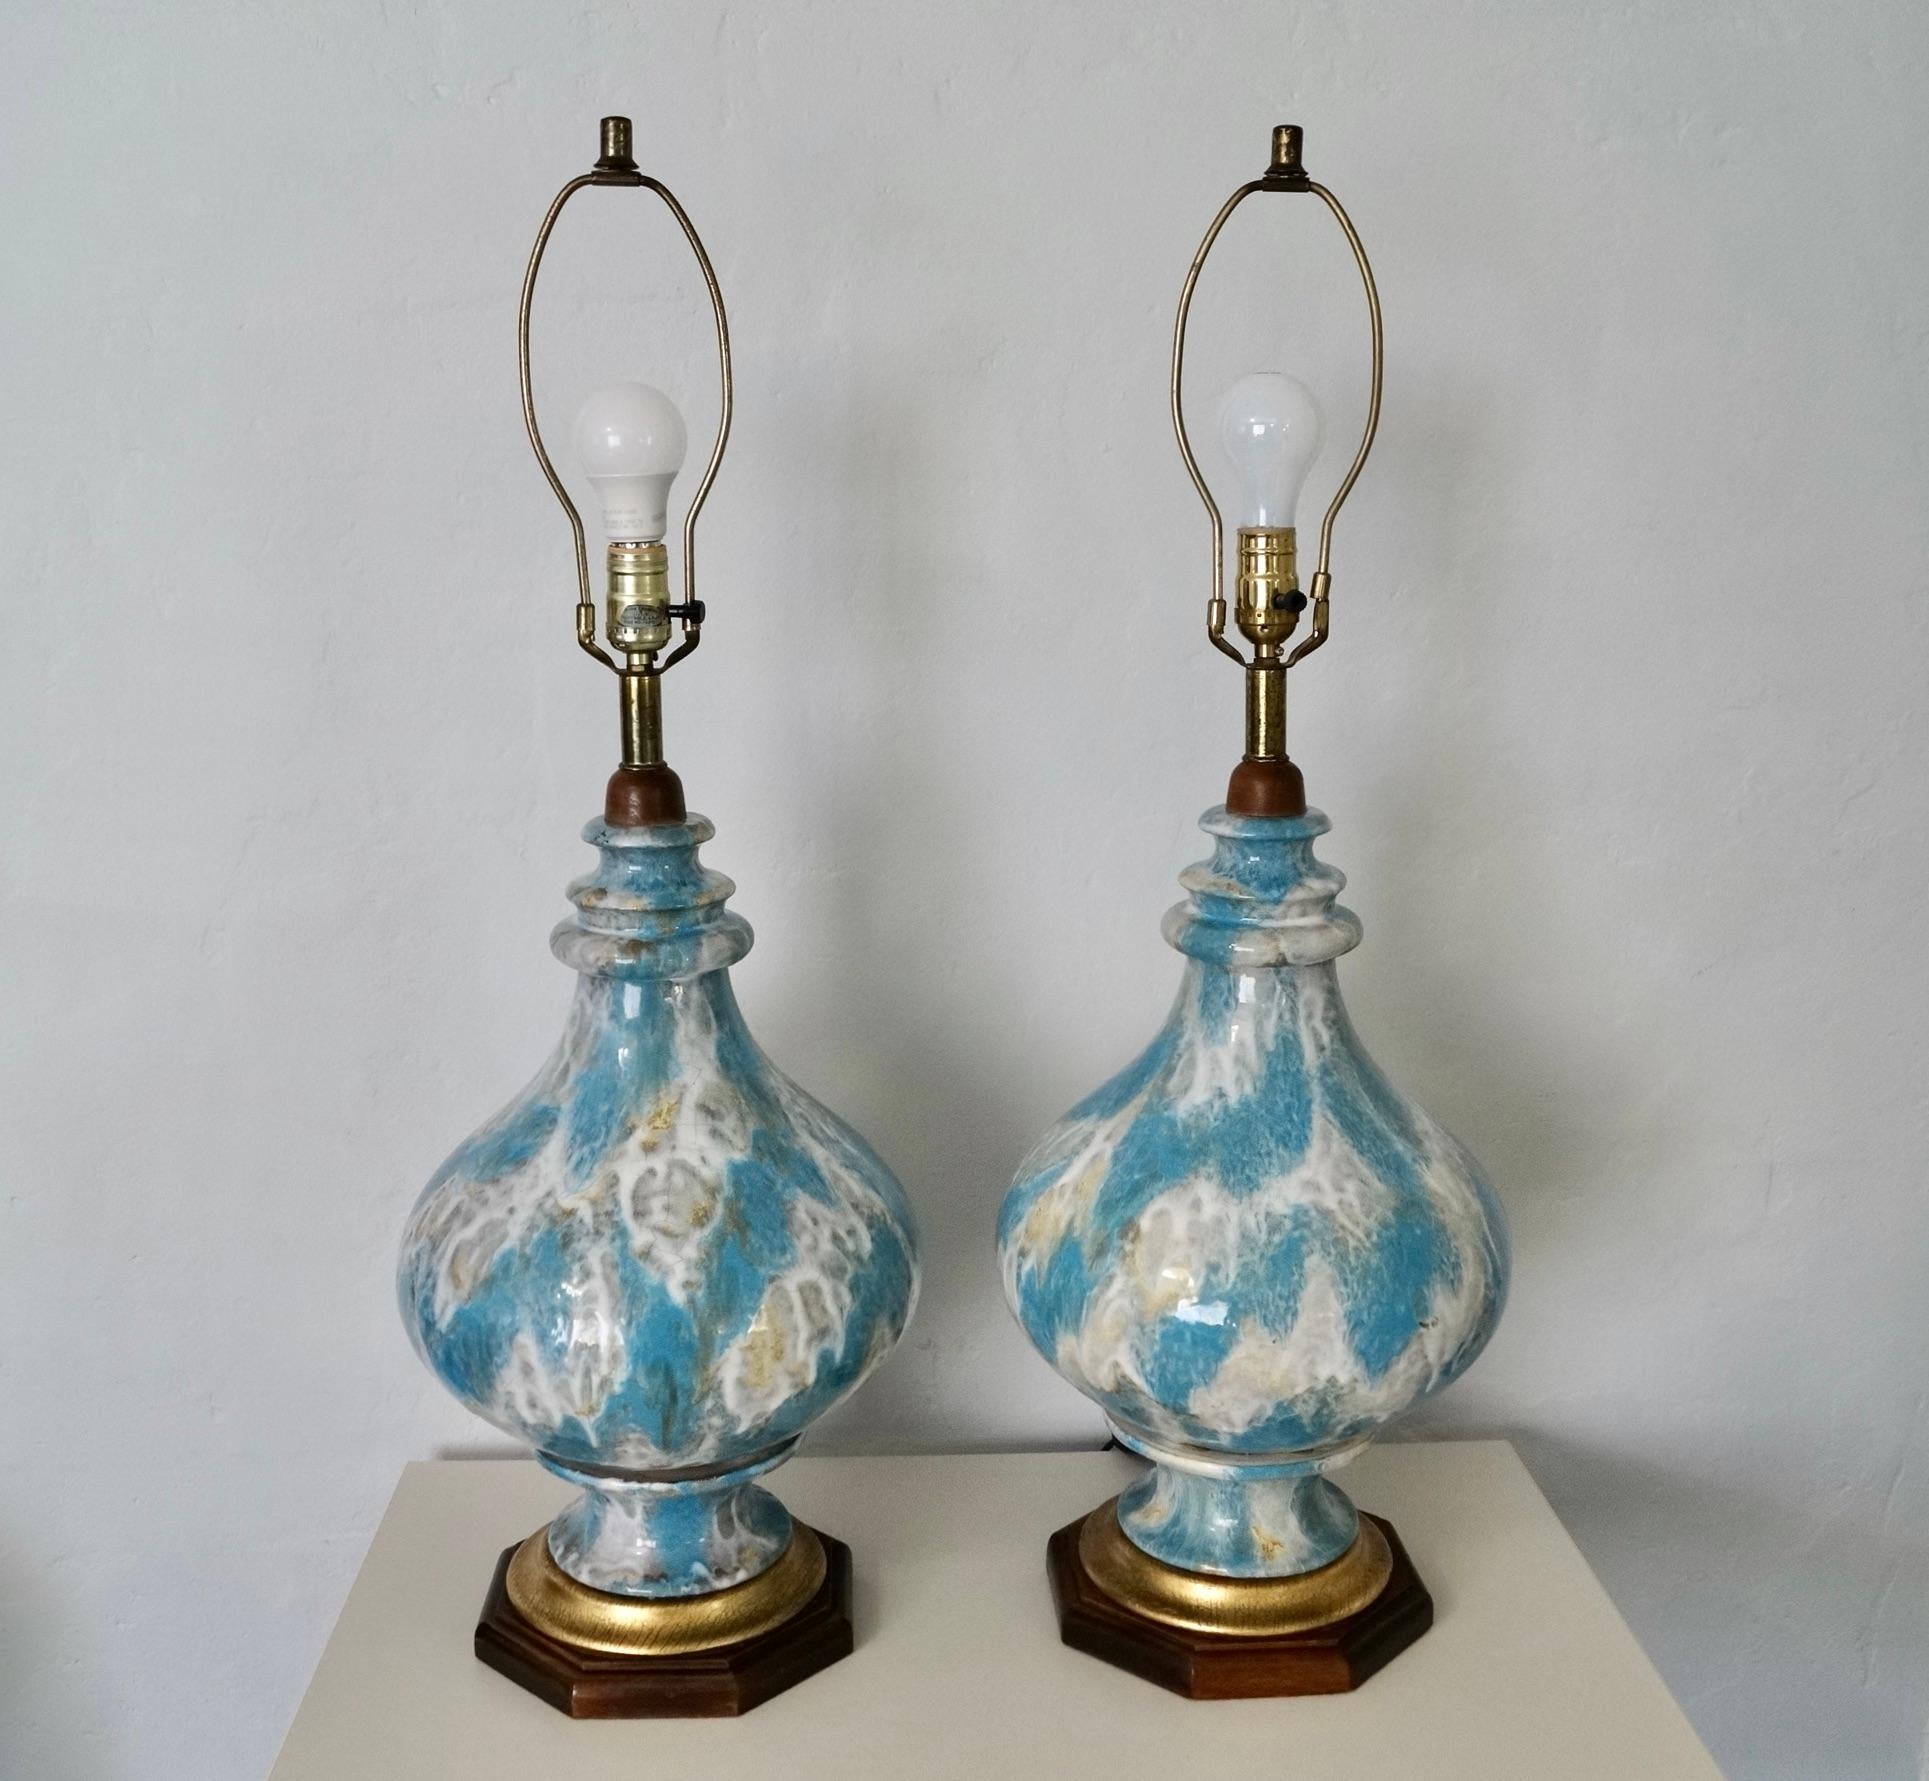 Paire de lampes de table Vintage Mid century Modern à vendre. Ils sont tous deux en bon état et rares. Ils sont constitués d'une base en bois massif en finition noyer et d'une feuille d'or superposée à la base. Elles sont fabriquées en céramique